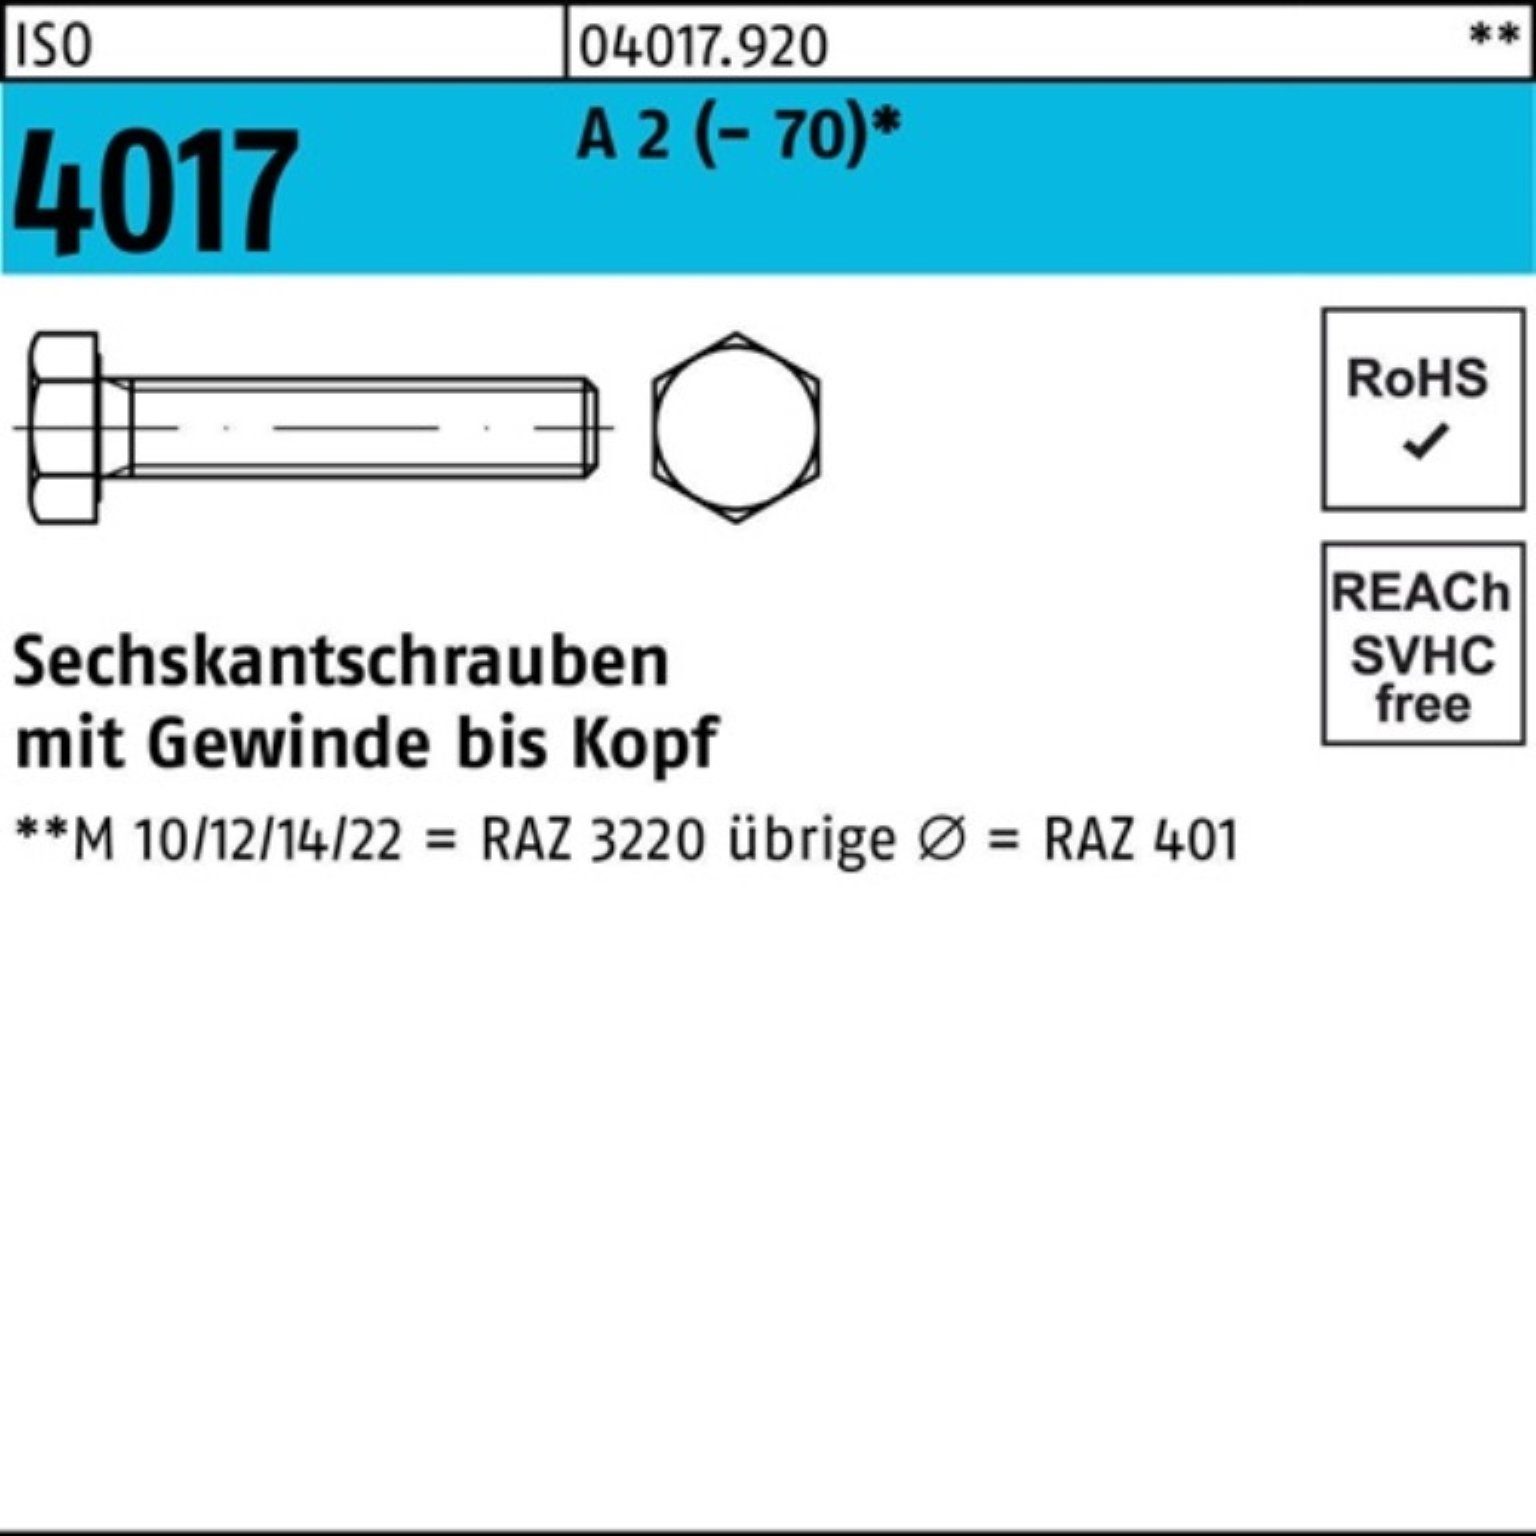 Pack VG ISO Sechskantschraube 4017 50 100er 100 A M10x 2 Bufab Sechskantschraube Stück (70)